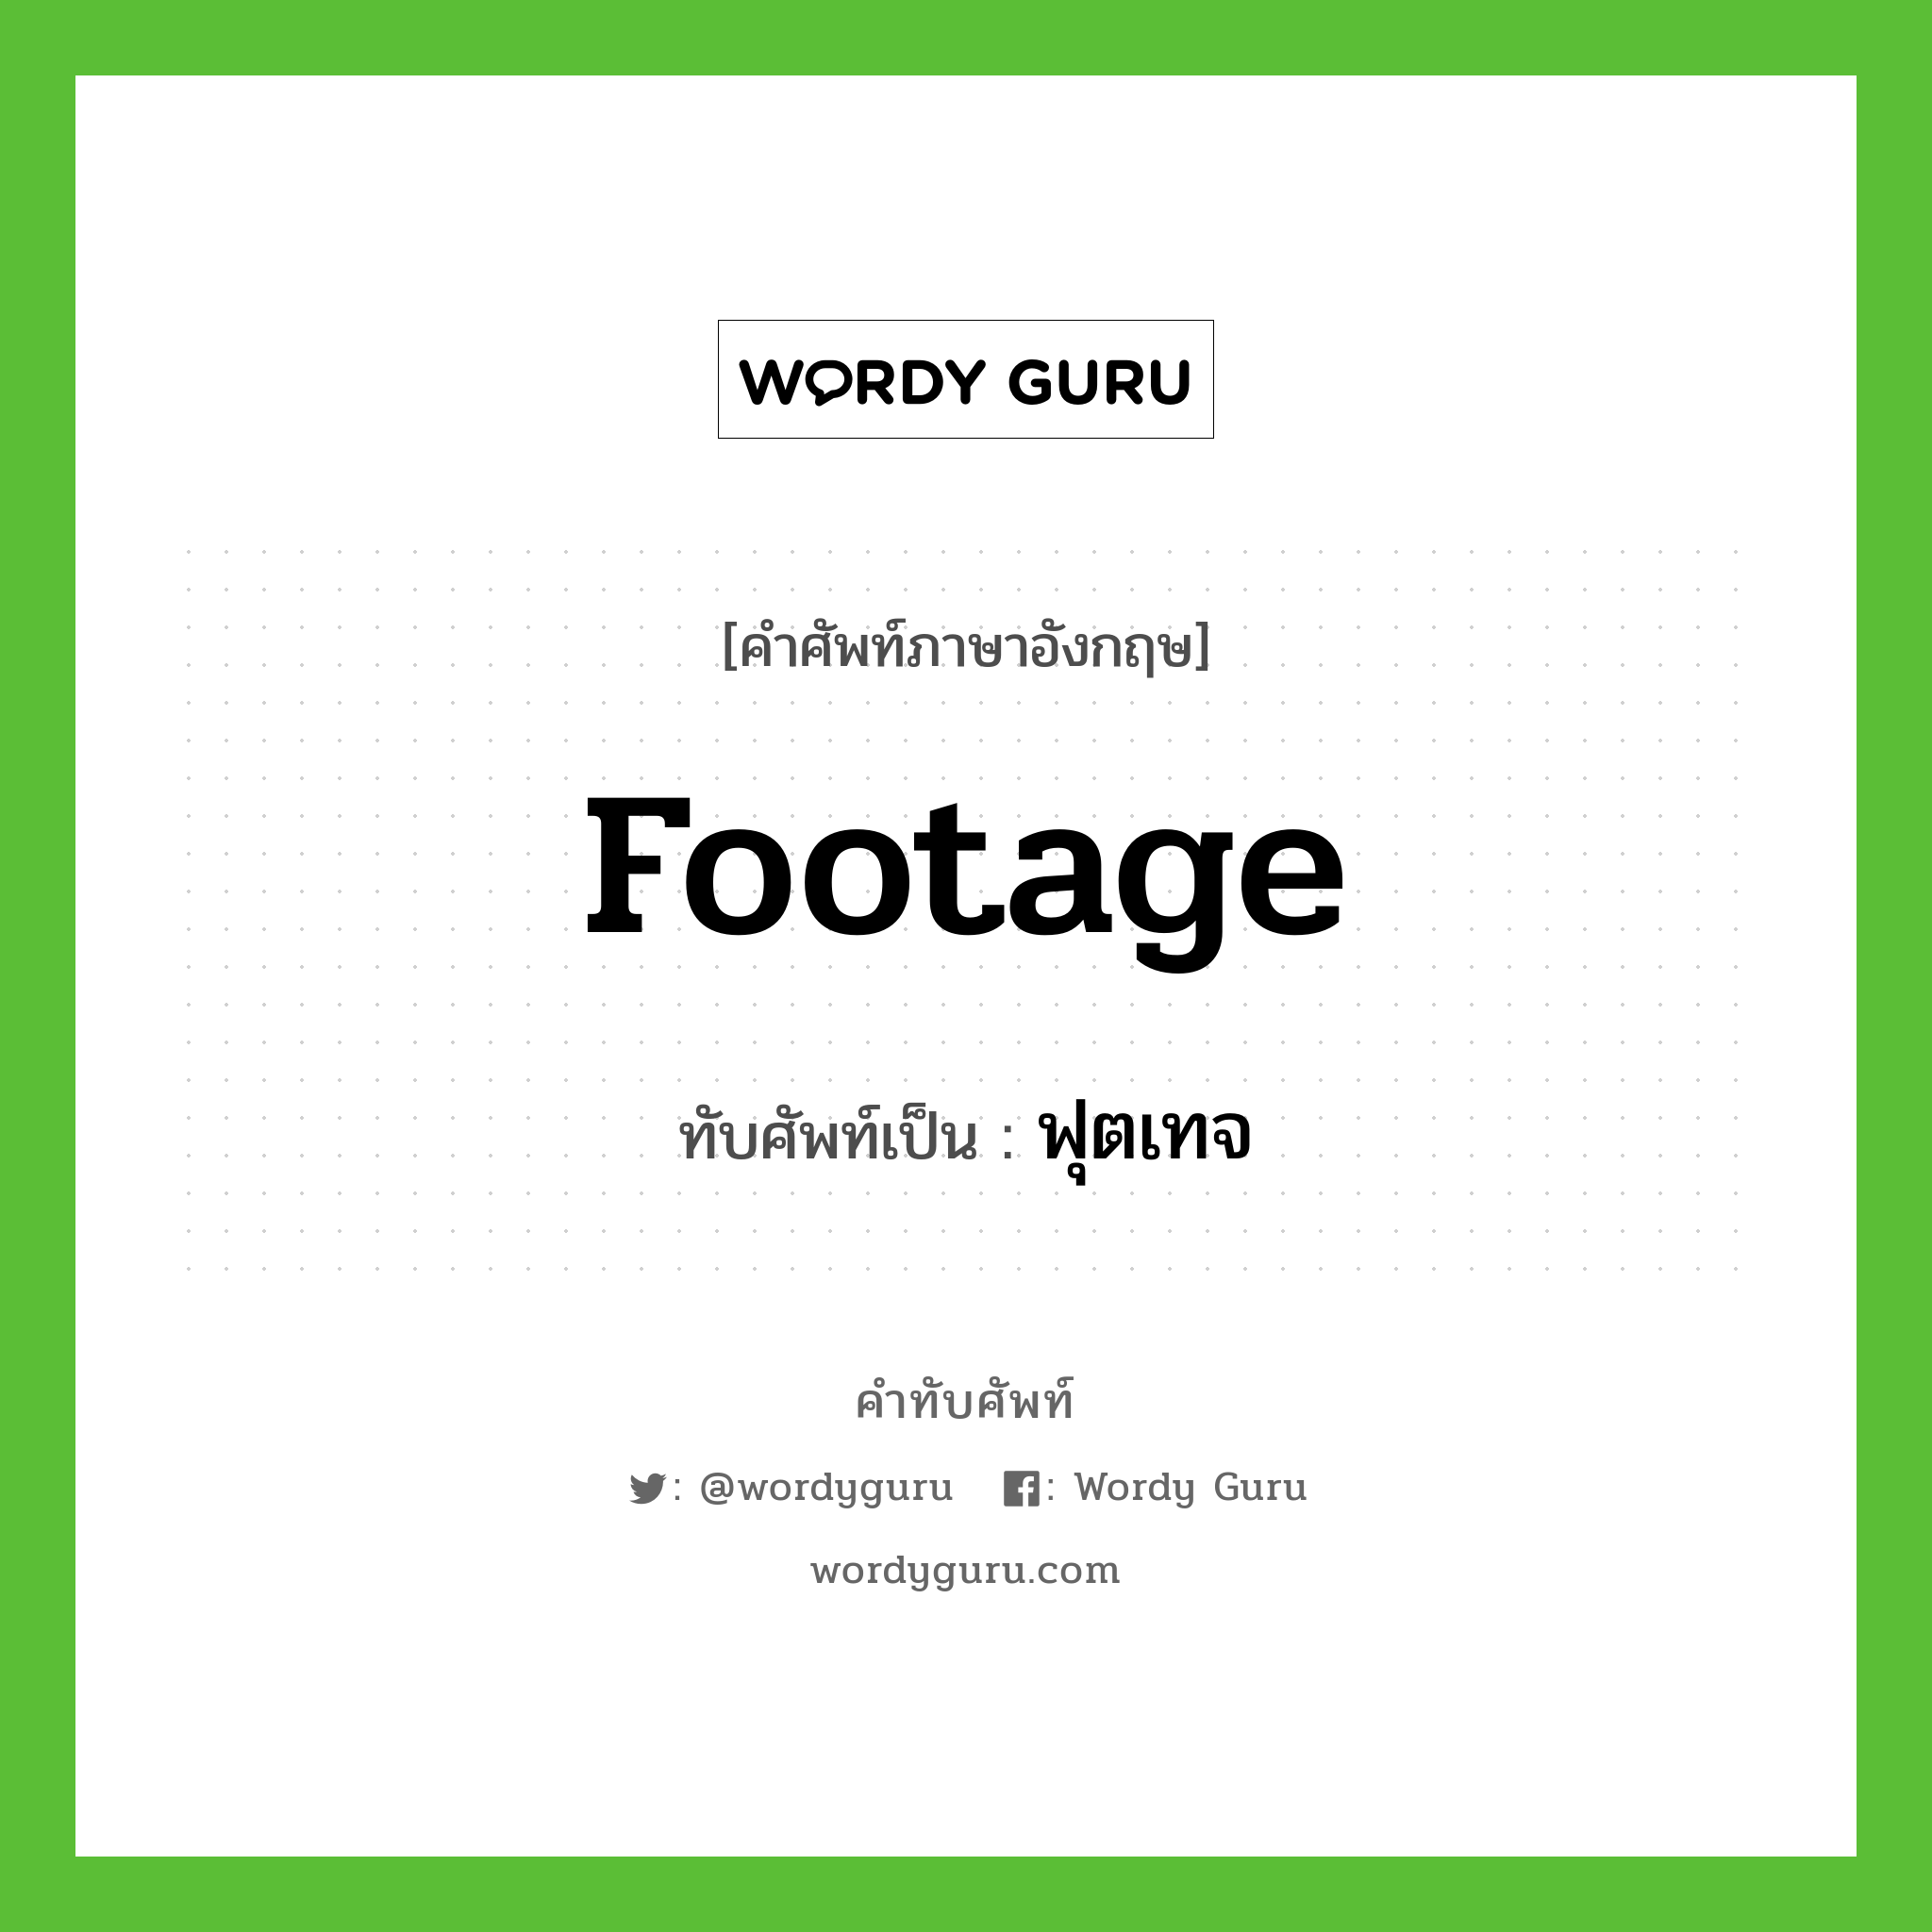 Footage เขียนเป็นคำไทยว่าอะไร?, คำศัพท์ภาษาอังกฤษ Footage ทับศัพท์เป็น ฟุตเทจ